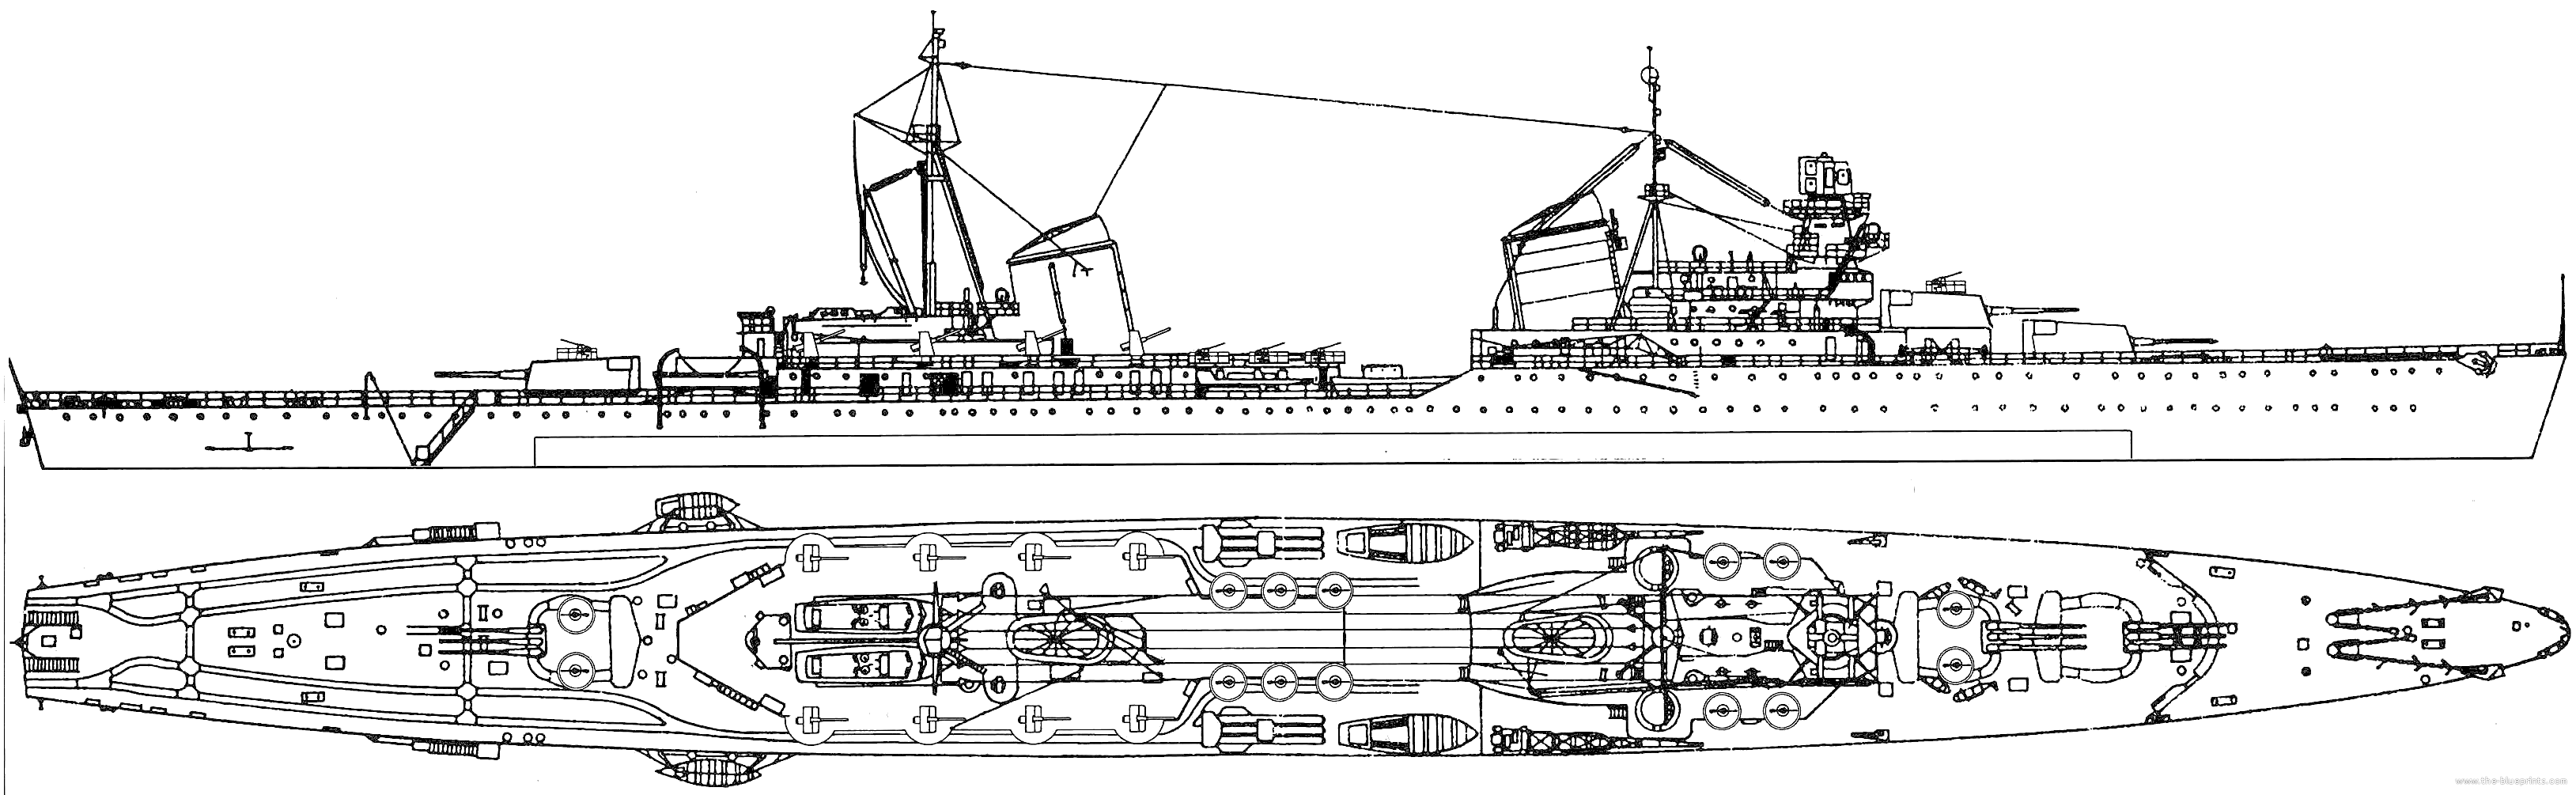 ussr-kaganovich-1945-kirov-class-project-26bis2-light-cruiser.png